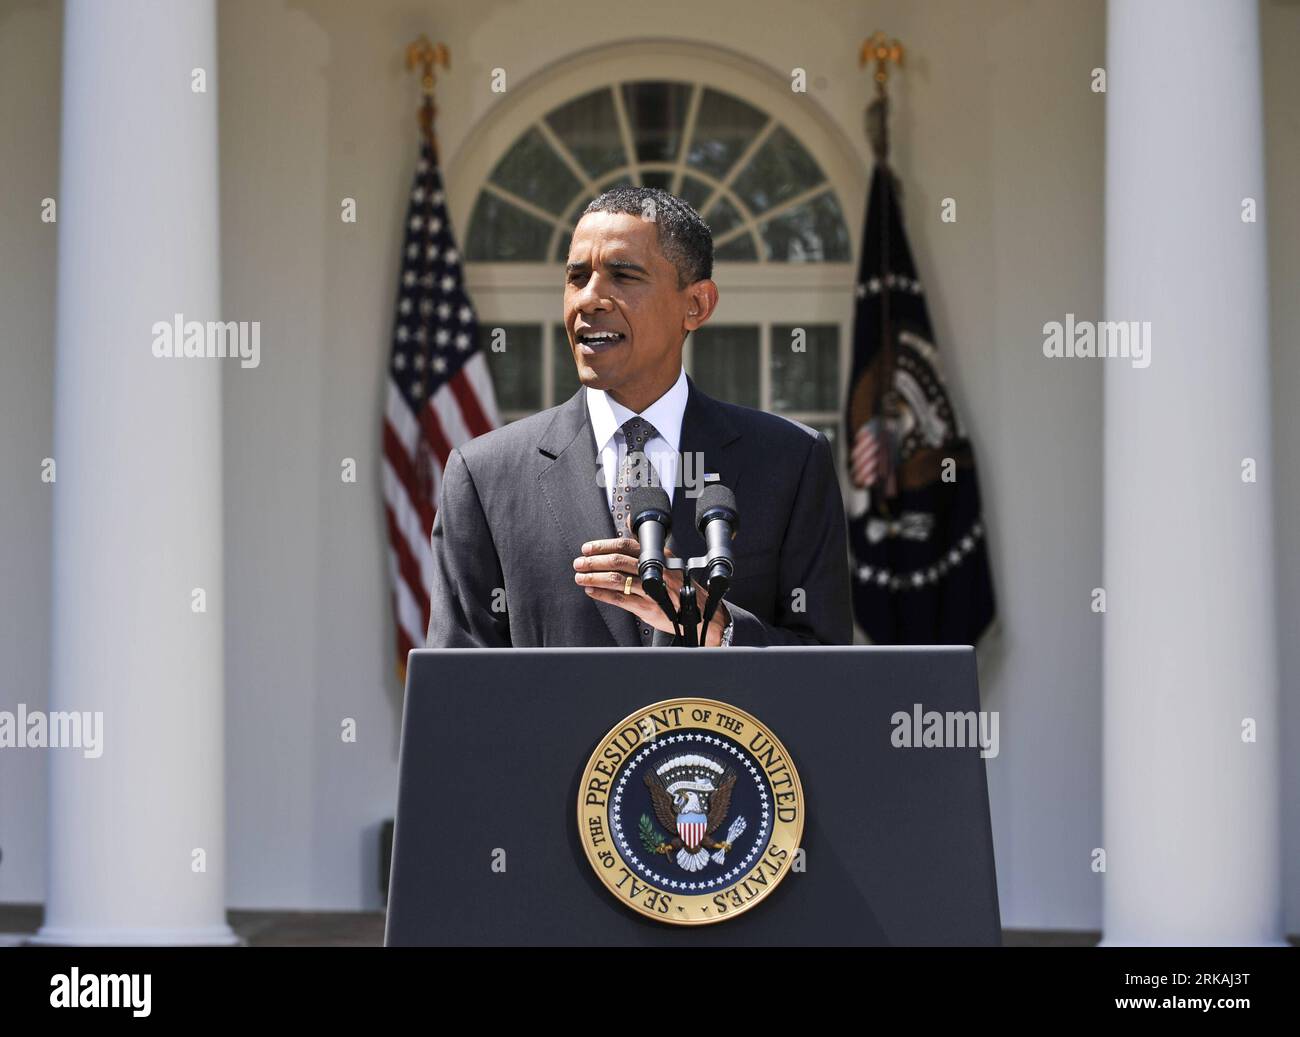 Bildnummer: 54367263 Datum: 30.08.2010 Copyright: Imago/Xinhua (100830) -- WASHINGTON D.C., 30 de agosto de 2010 (Xinhua) -- El presidente de los Estados Unidos, Barack Obama, hace una declaración en el Jardín de las Rosas de la Casa Blanca en Washington D.C., capital de los Estados Unidos, el 30 de agosto de 2010. Obama dijo el lunes que su equipo económico había discutido medidas adicionales para impulsar la economía, y nuevamente instó al Congreso a aprobar un proyecto de ley que reduciría más impuestos y pondría a disposición más préstamos a las pequeñas empresas. (Xinhua/Zhang Jun) (1)EE.UU.-WASHINGTON-OBAMA-ECONOMÍA PUBLICATIONxNOTxINxCHN POLITIK People Premiumd xin Foto de stock